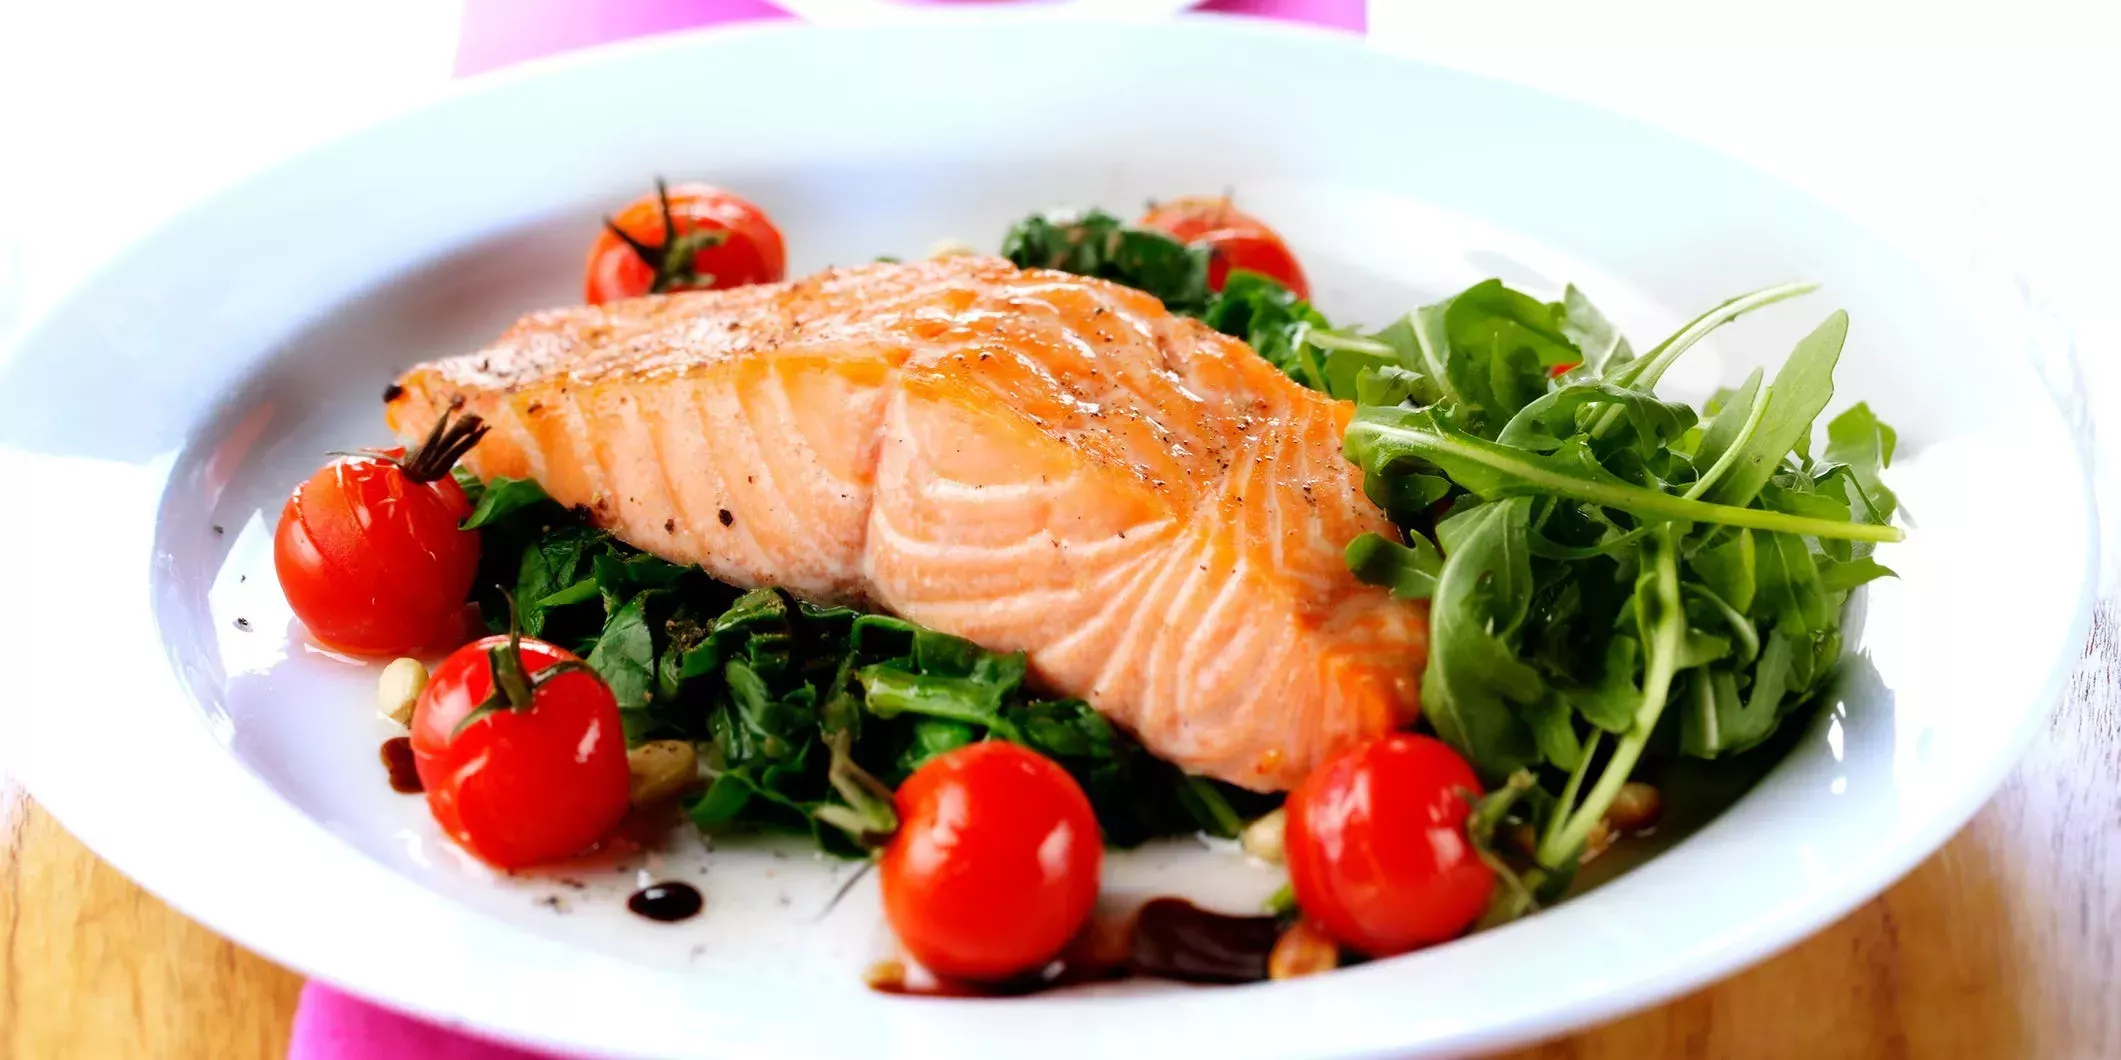 Comer más proteínas mientras se hace dieta ayuda a mantener el músculo magro durante la pérdida de peso y fomenta una alimentación más saludable, sugiere un estudio